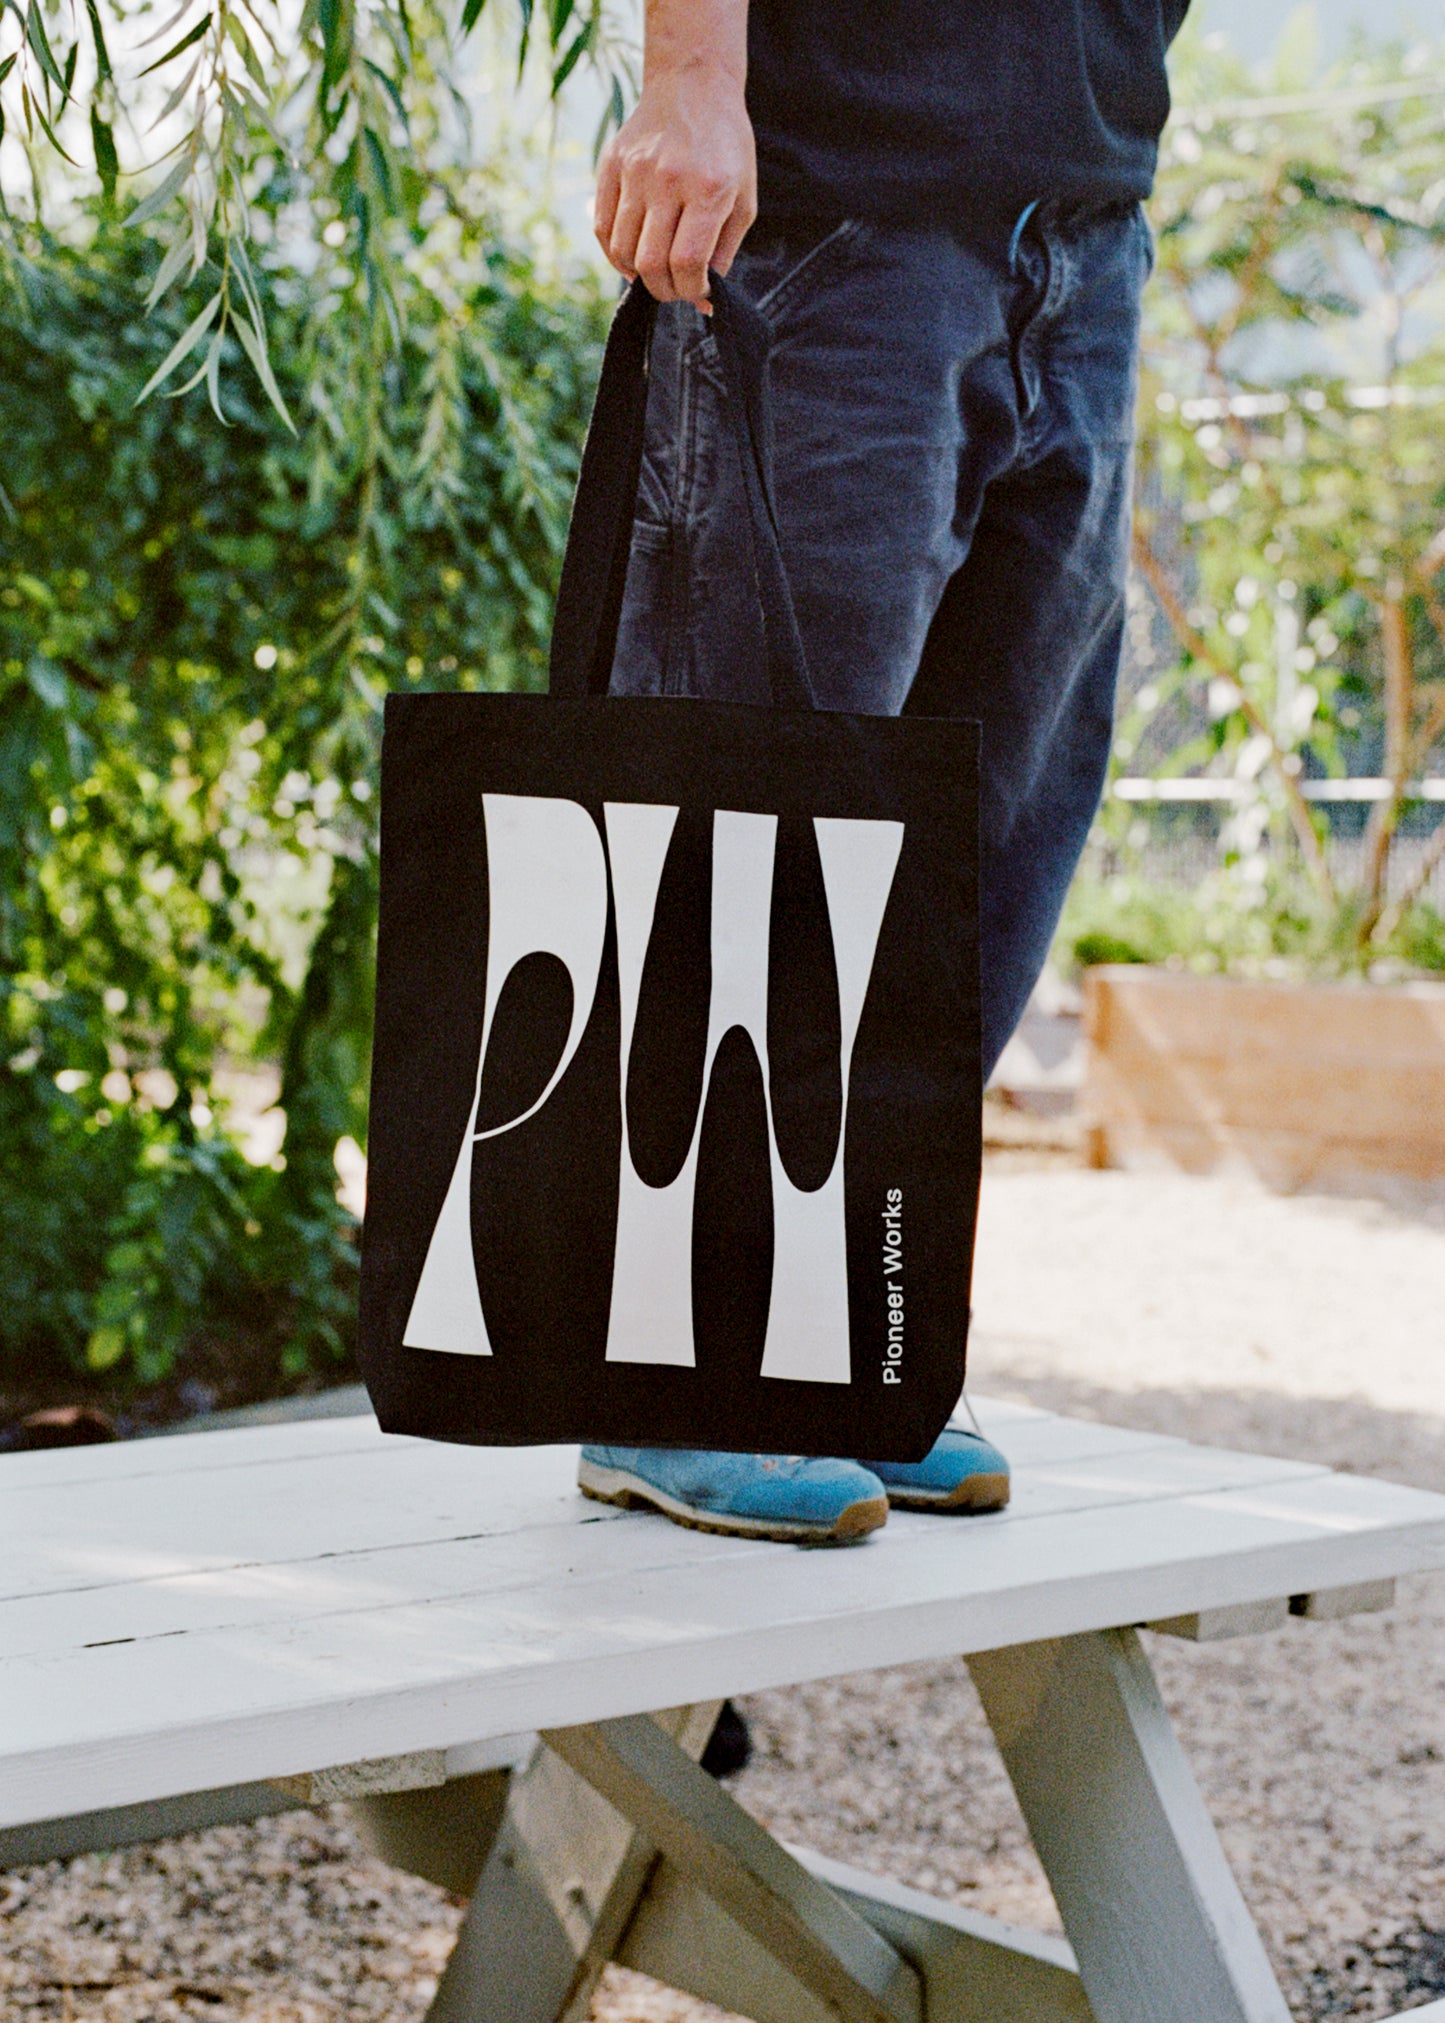 Pioneer Works Tote Bag